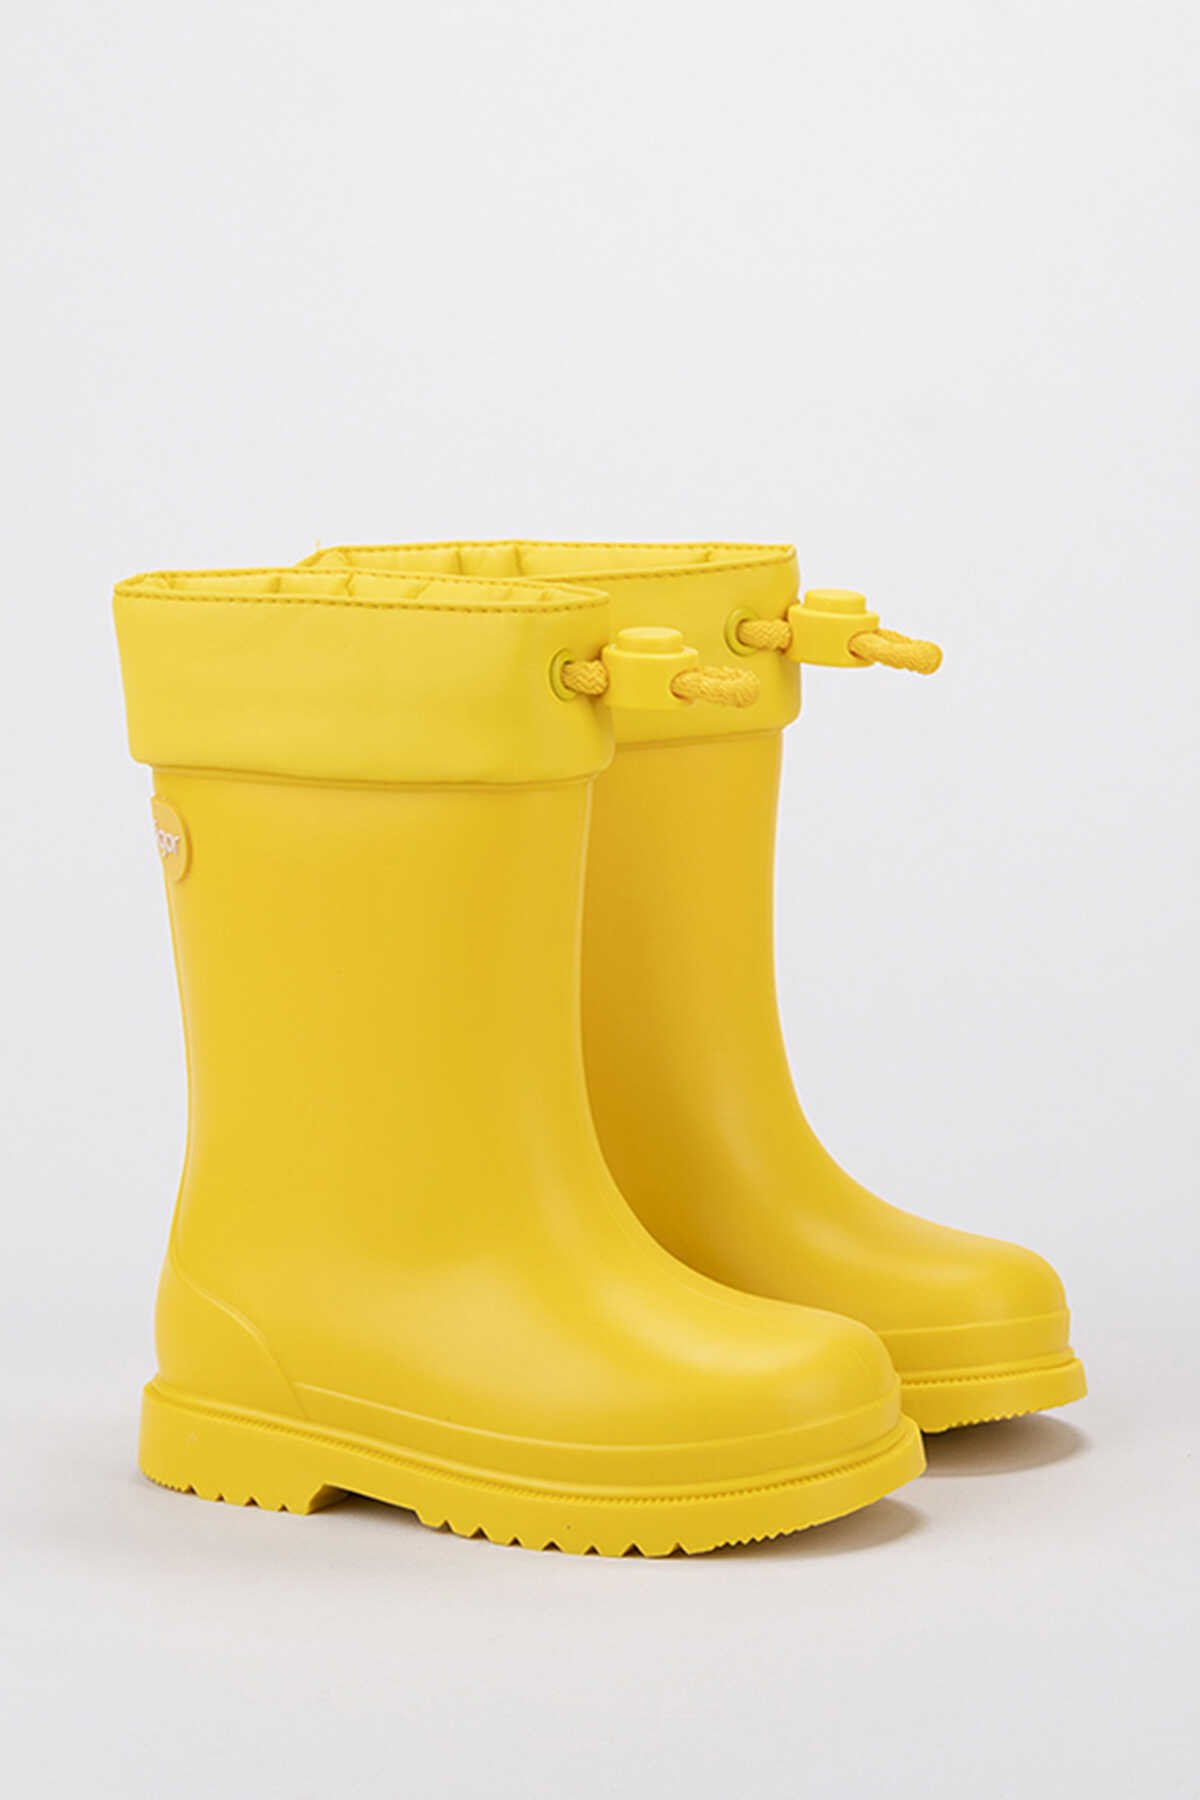 Igor - Igor CHUFO CUELLO Yağmur Çizmesi Kız Kız Çocuk Ayakkabı Sarı